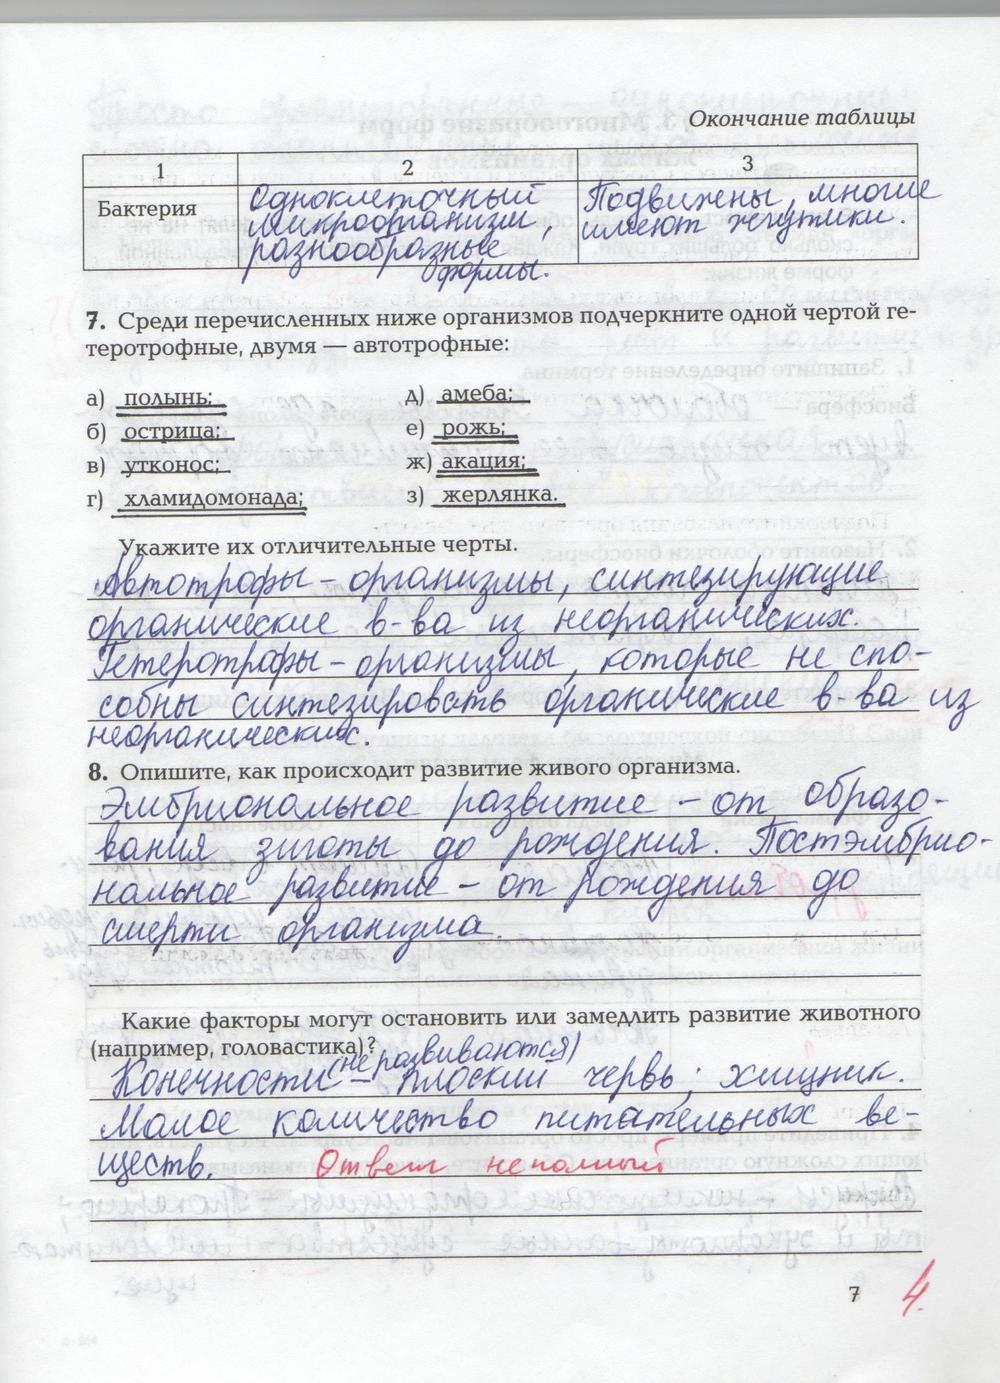 гдз 9 класс рабочая тетрадь страница 7 биология Козлова, Кучменко